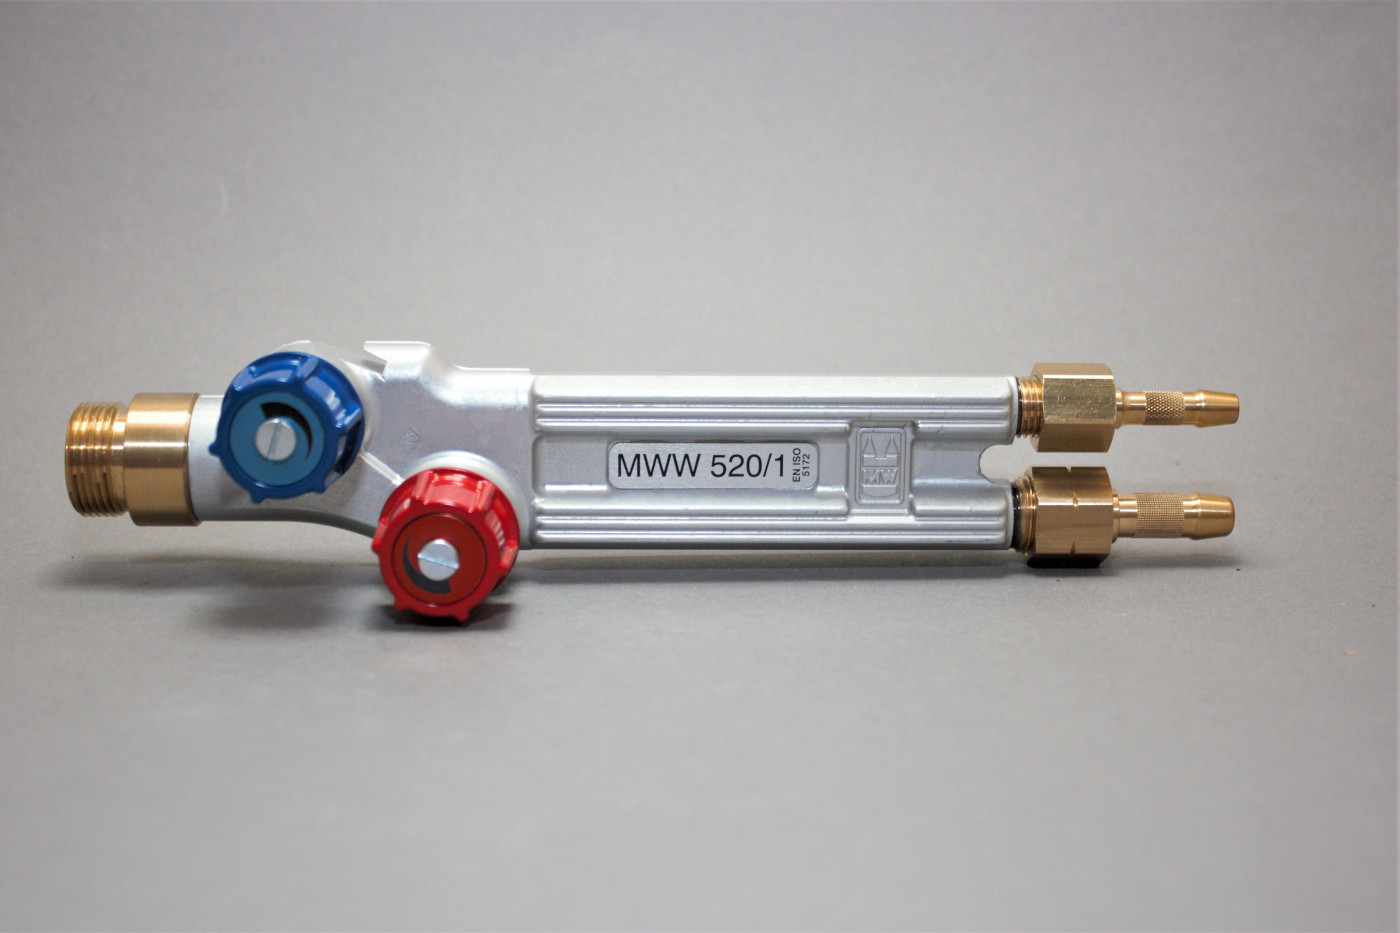 Propan-Sauerstoff Universal MWW 520/1 Brennerkasten Grundausstattung 